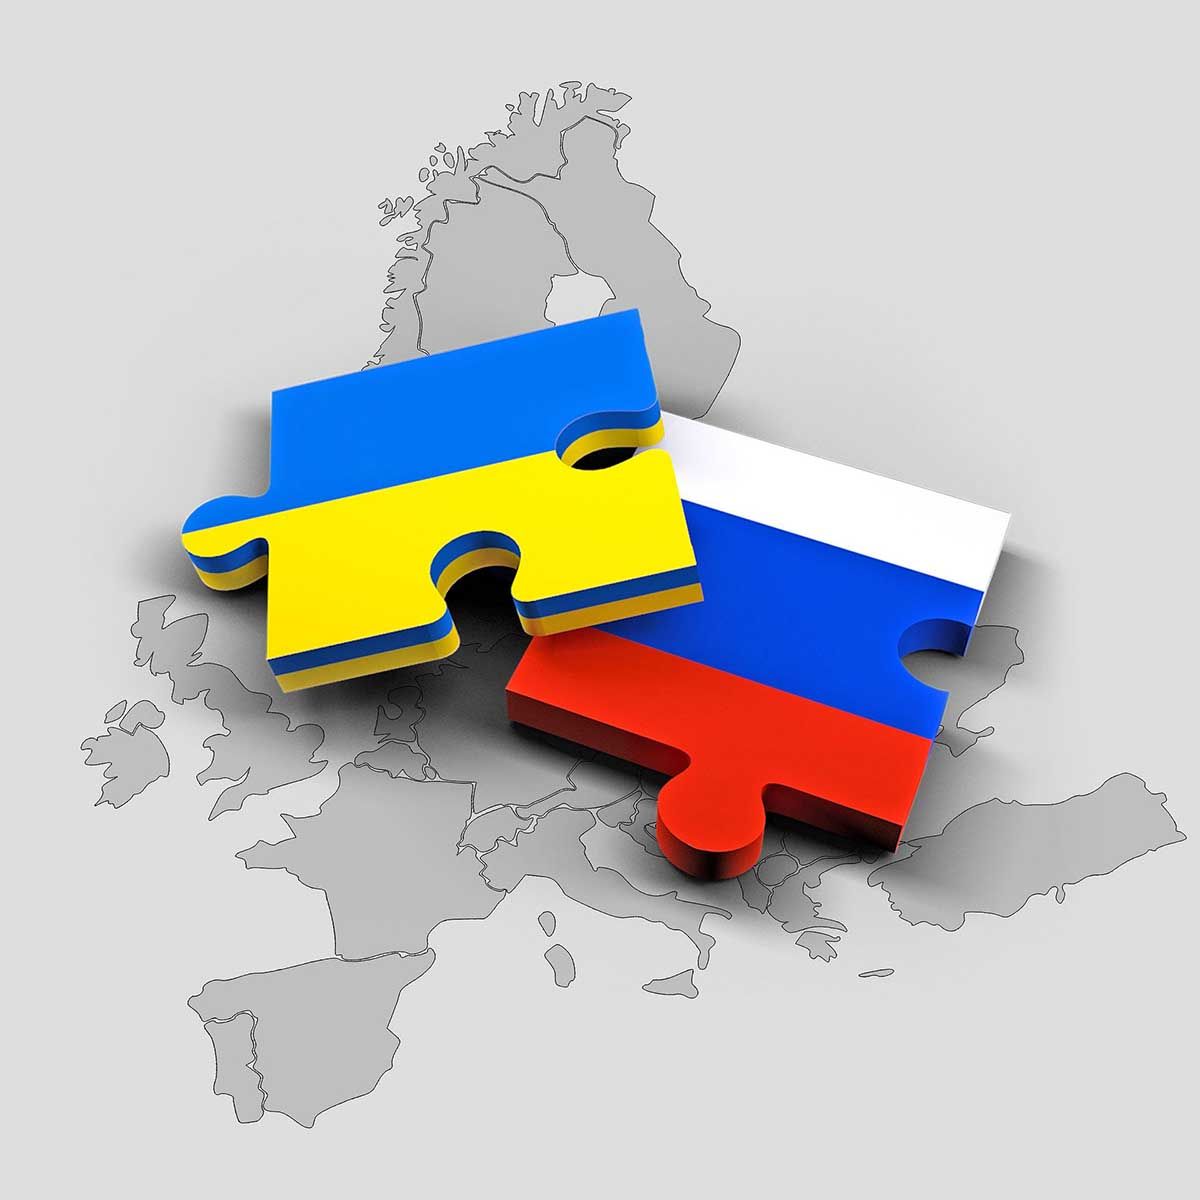 La primera víctima de la guerra es la verdad. Ya en las jornadas previas a la invasión rusa de Ucrania / Imagen: Pixabay